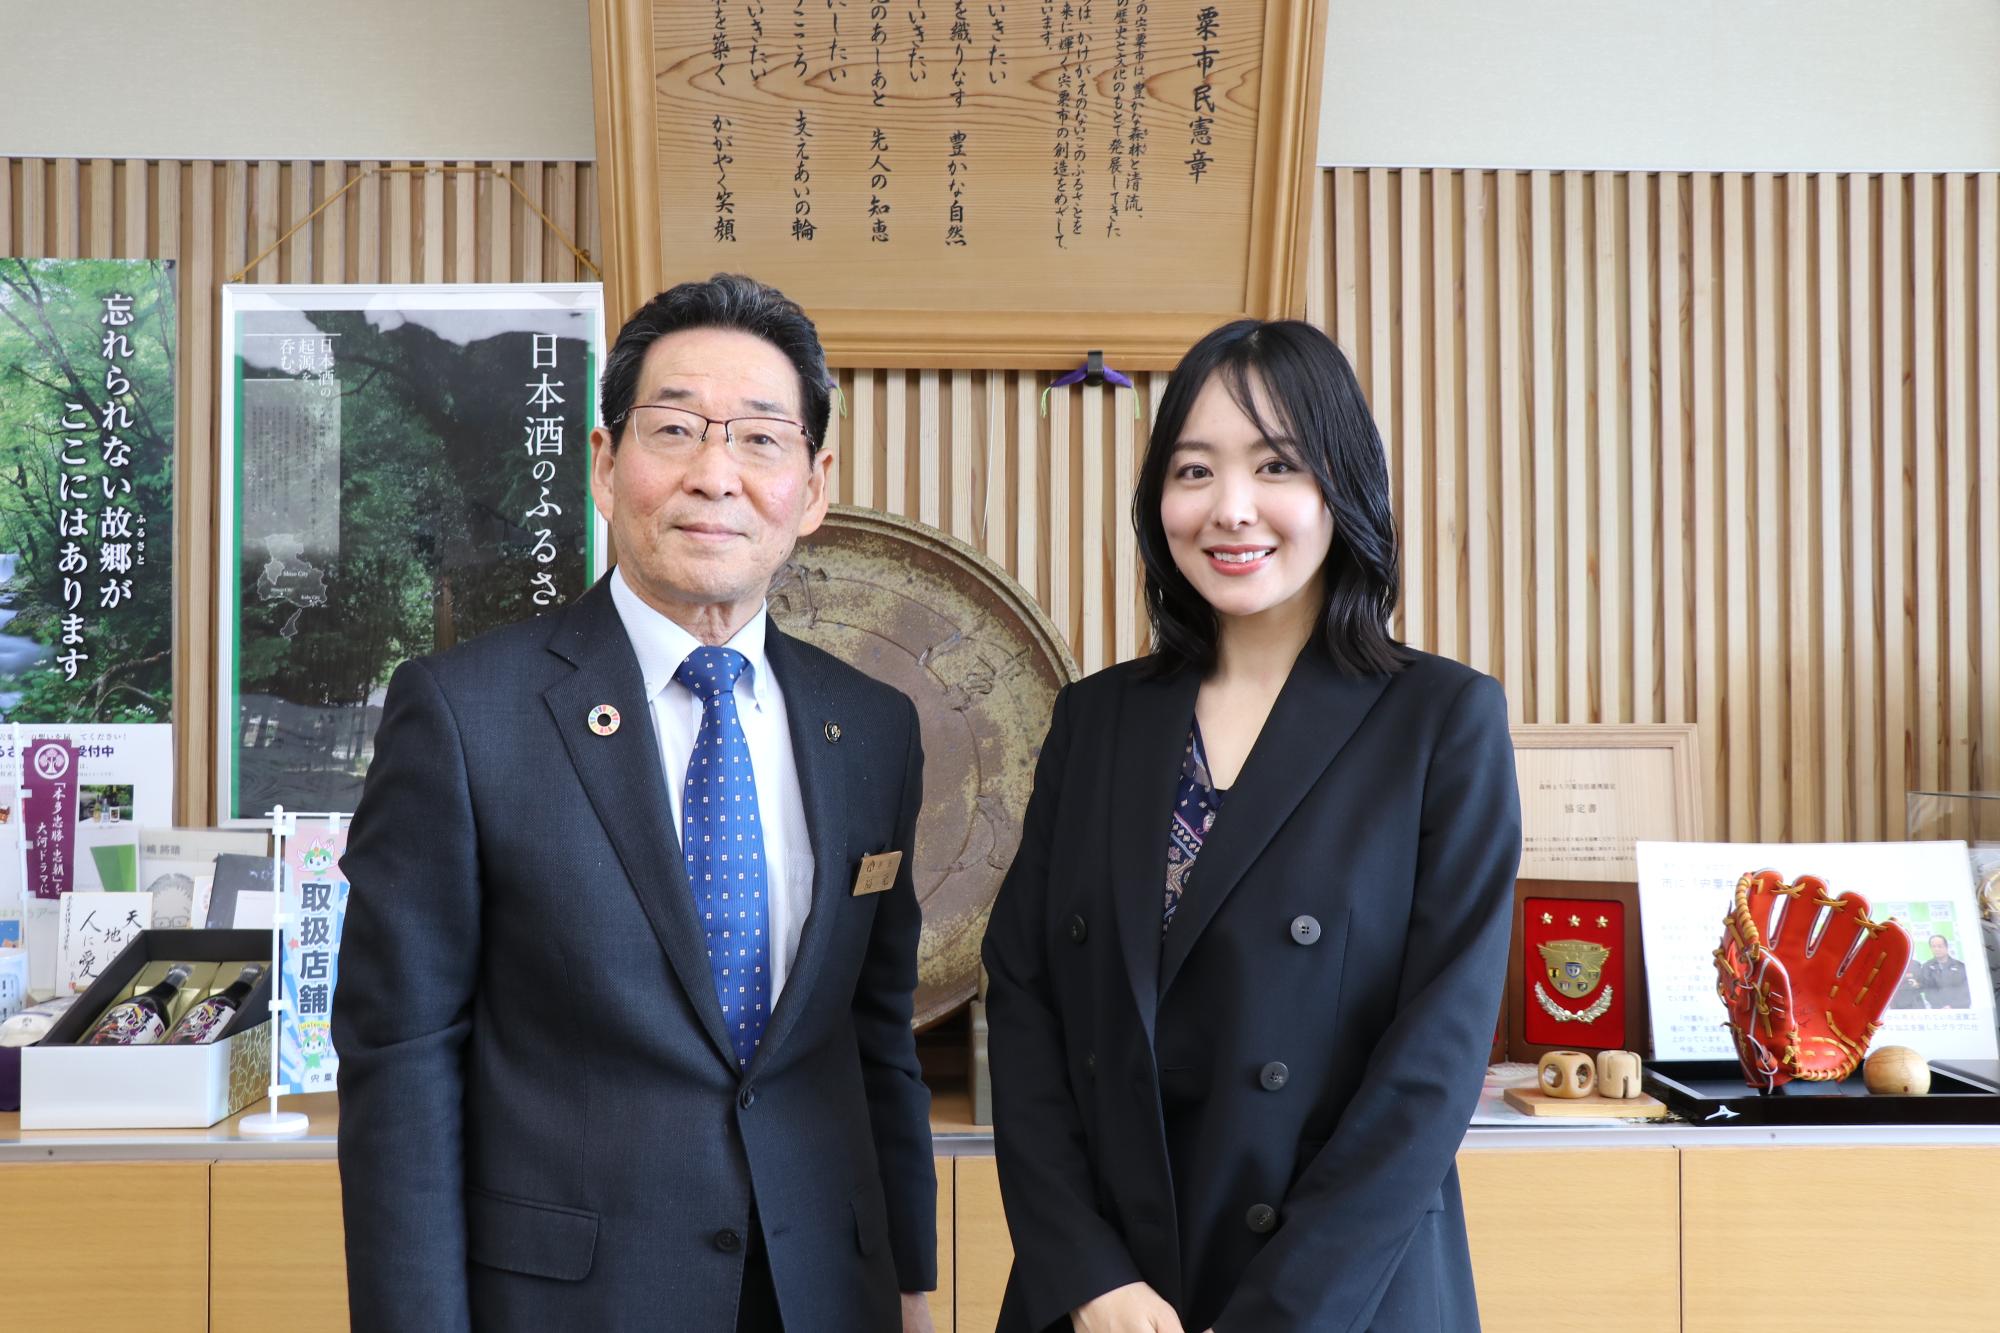 観光大使の藤本さんと福元市長が並んでいる写真